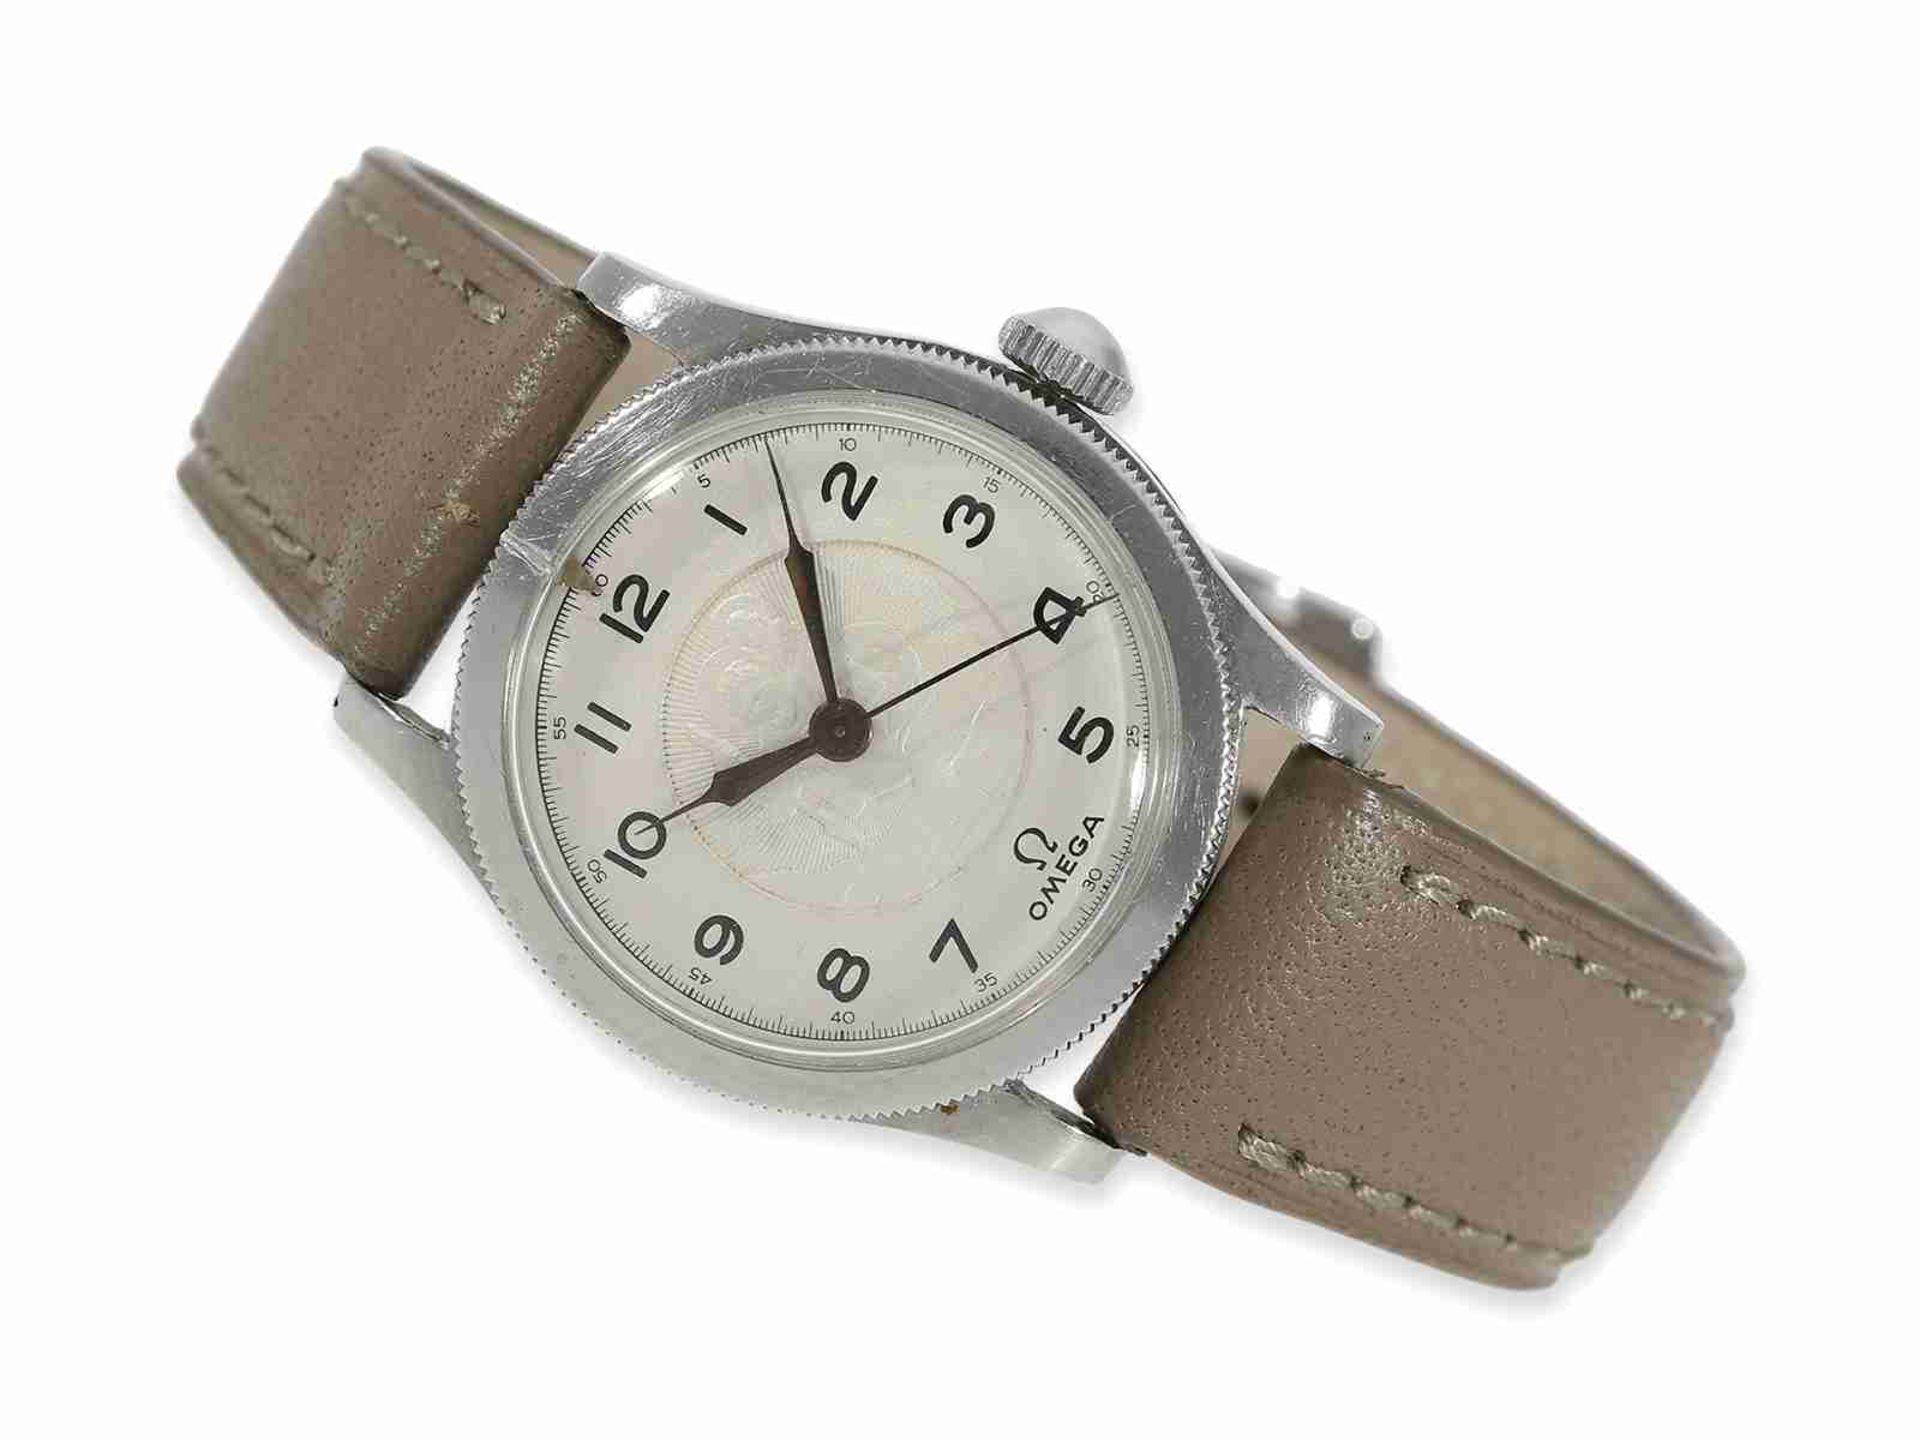 Armbanduhr: extrem seltene, frühe Omega Herrenuhr mit Sonderzifferblatt "Heiliger Christophorus" und